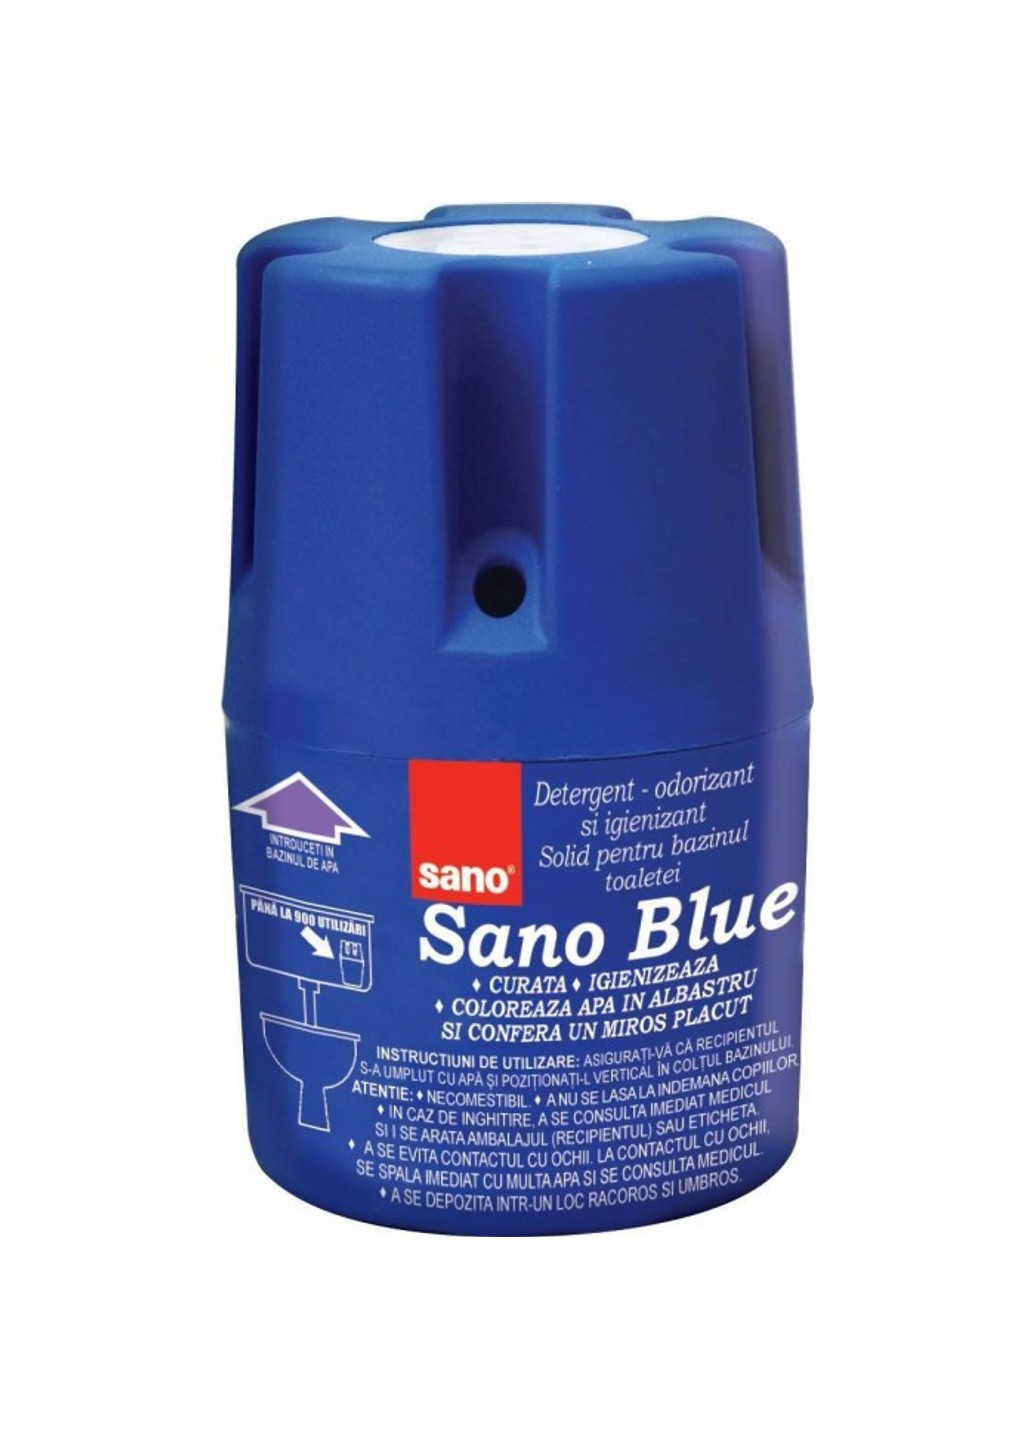 Средство для унитаза Blue, 150 г Sano (272790450)